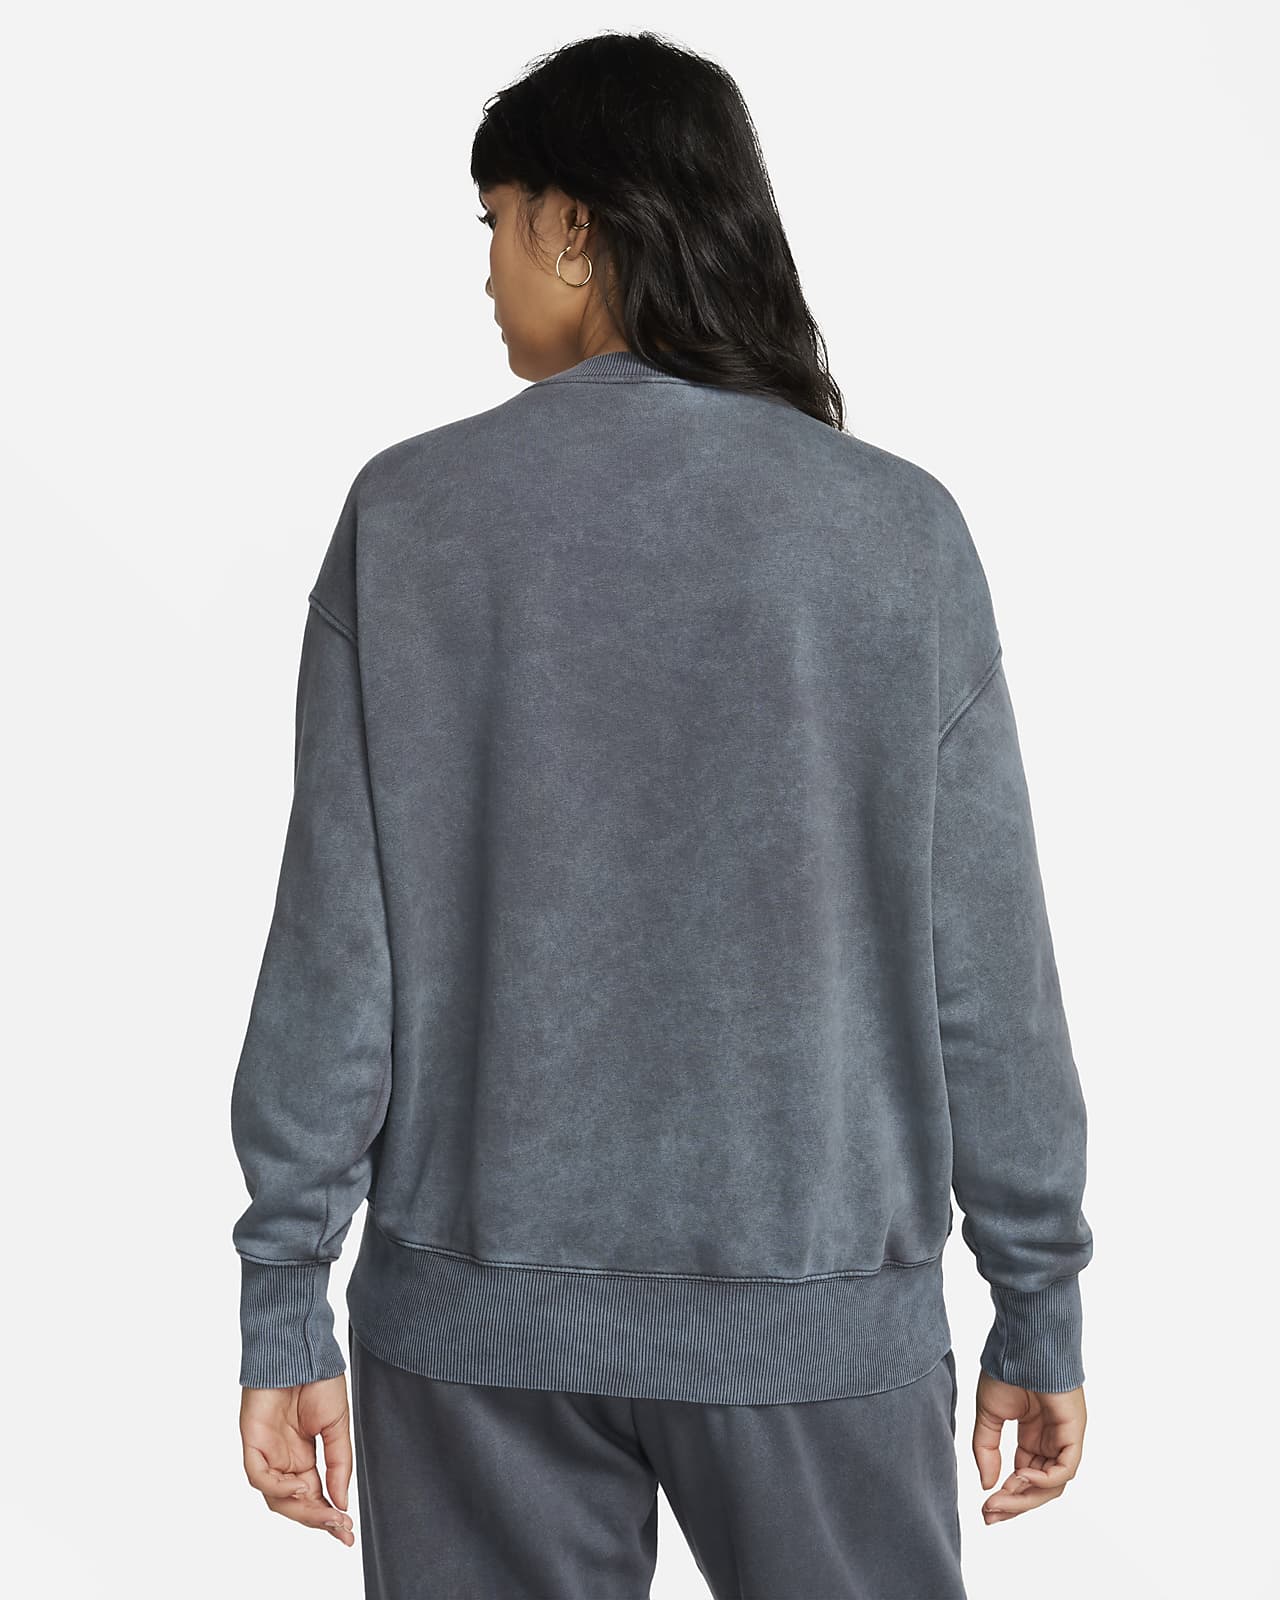 Women's Nike Sportswear Essentials Oversized Fleece Crew